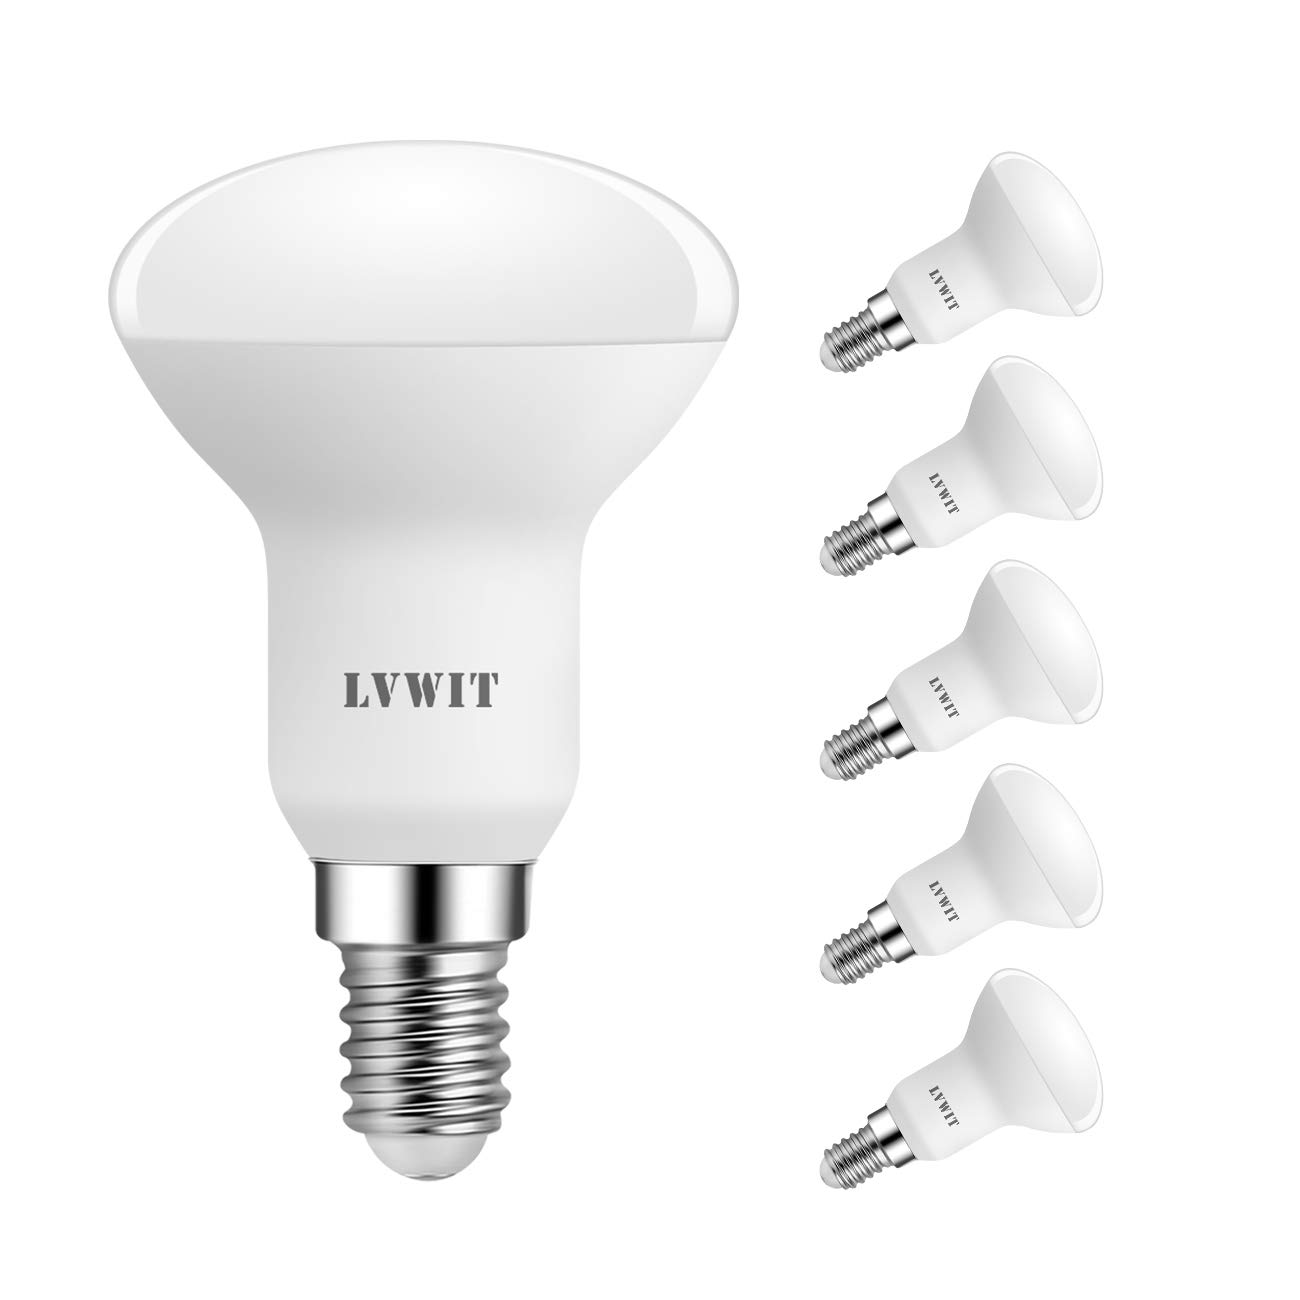 Populaire LVWIT 5W Reflecteur Ampoules LED E14 R50, Equivalent à Ampoule Incandescence 50W, 470Lm 6500K Blanc Froid, Non Dimmable, Lot de 6    [Classe énergétique F] wC0JySlA1 mode